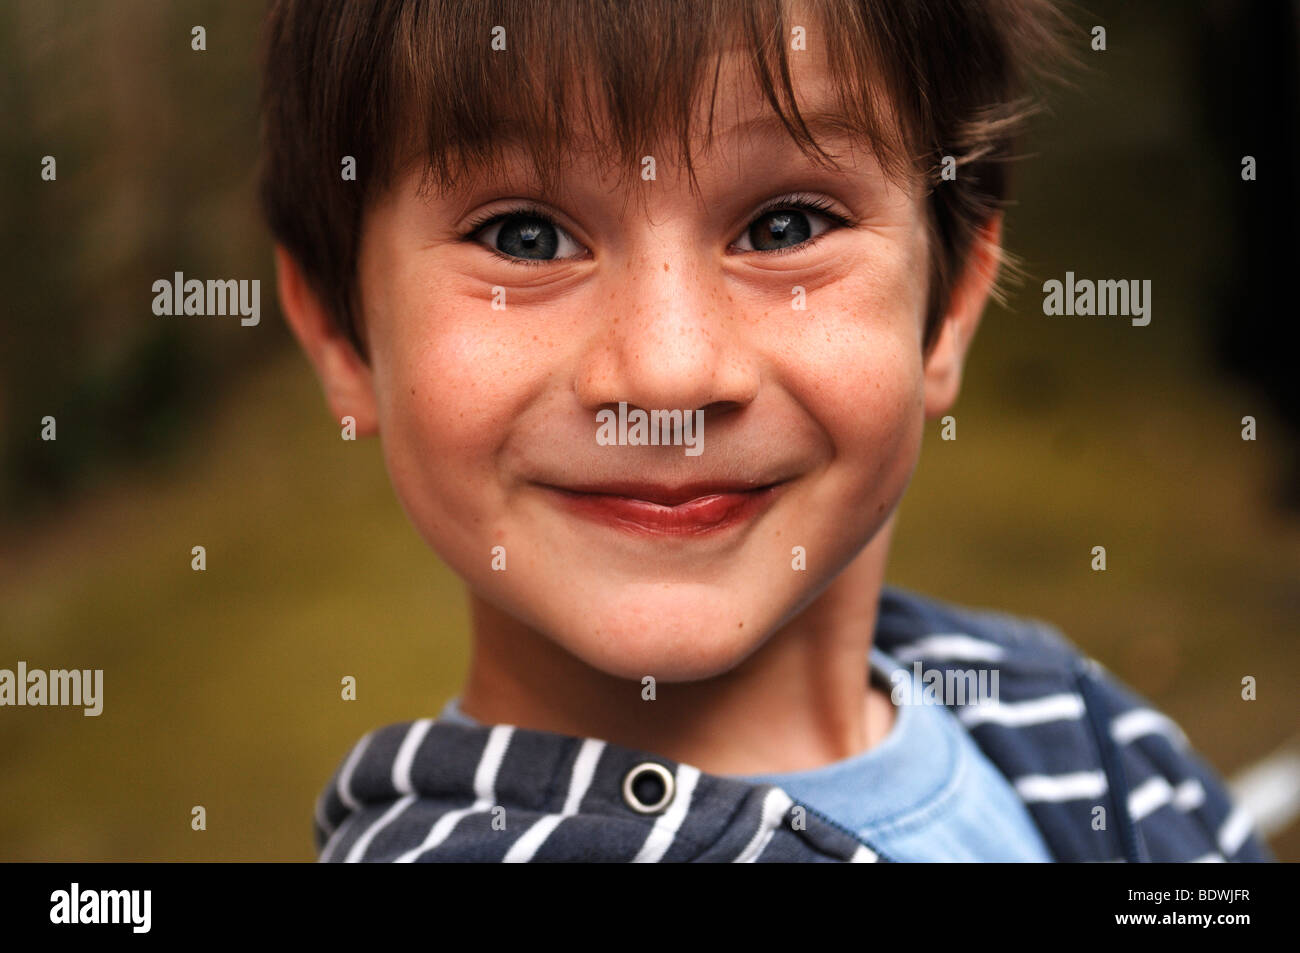 Kleiner Junge Grimassen Stockfotografie - Alamy